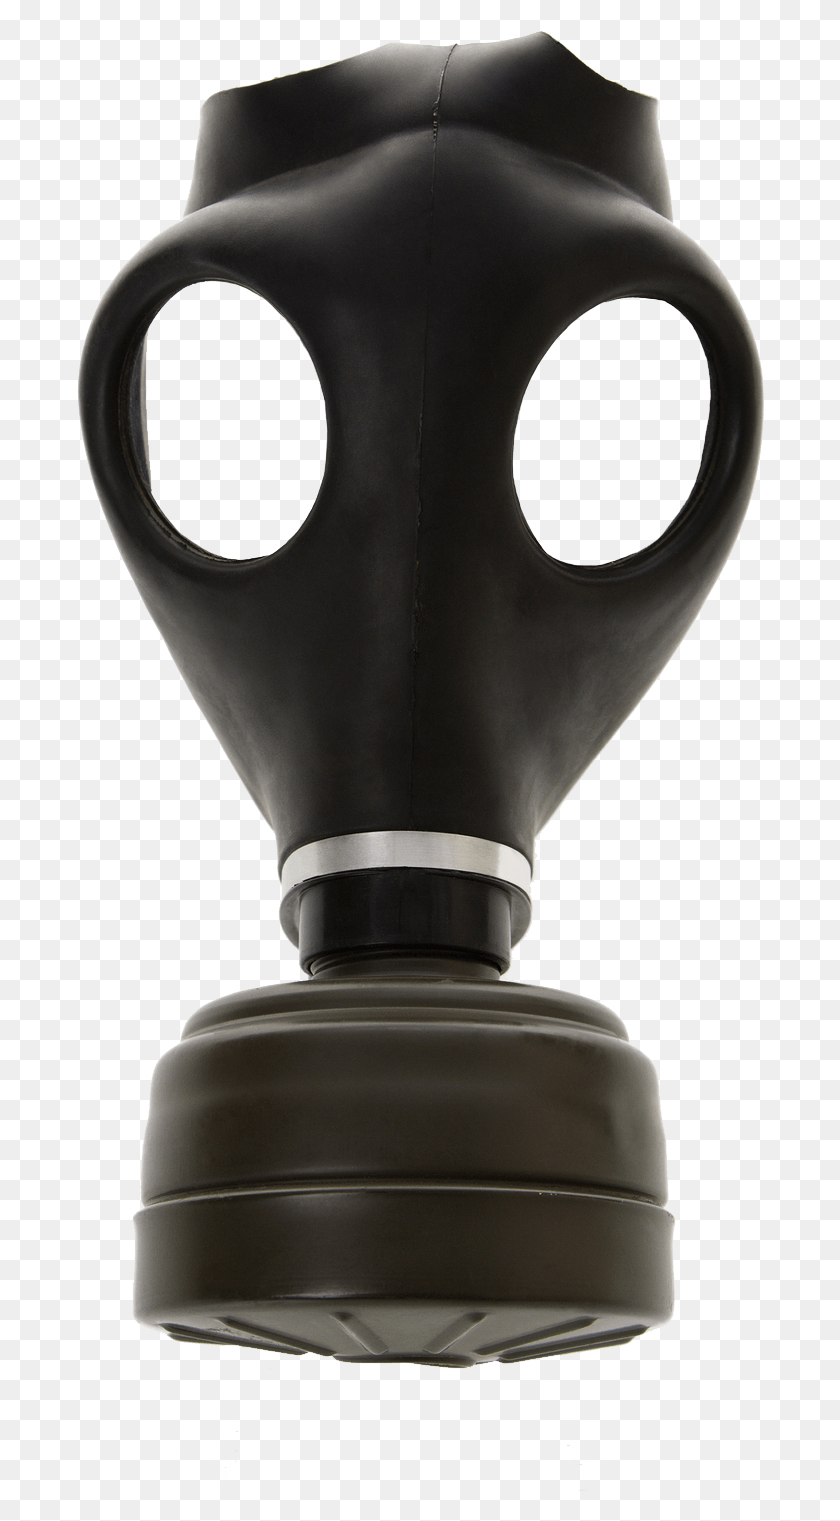 688x1461 Gas Mask Transparent Images Gas Mask Transparent Background, Lamp, Bottle, Trophy HD PNG Download